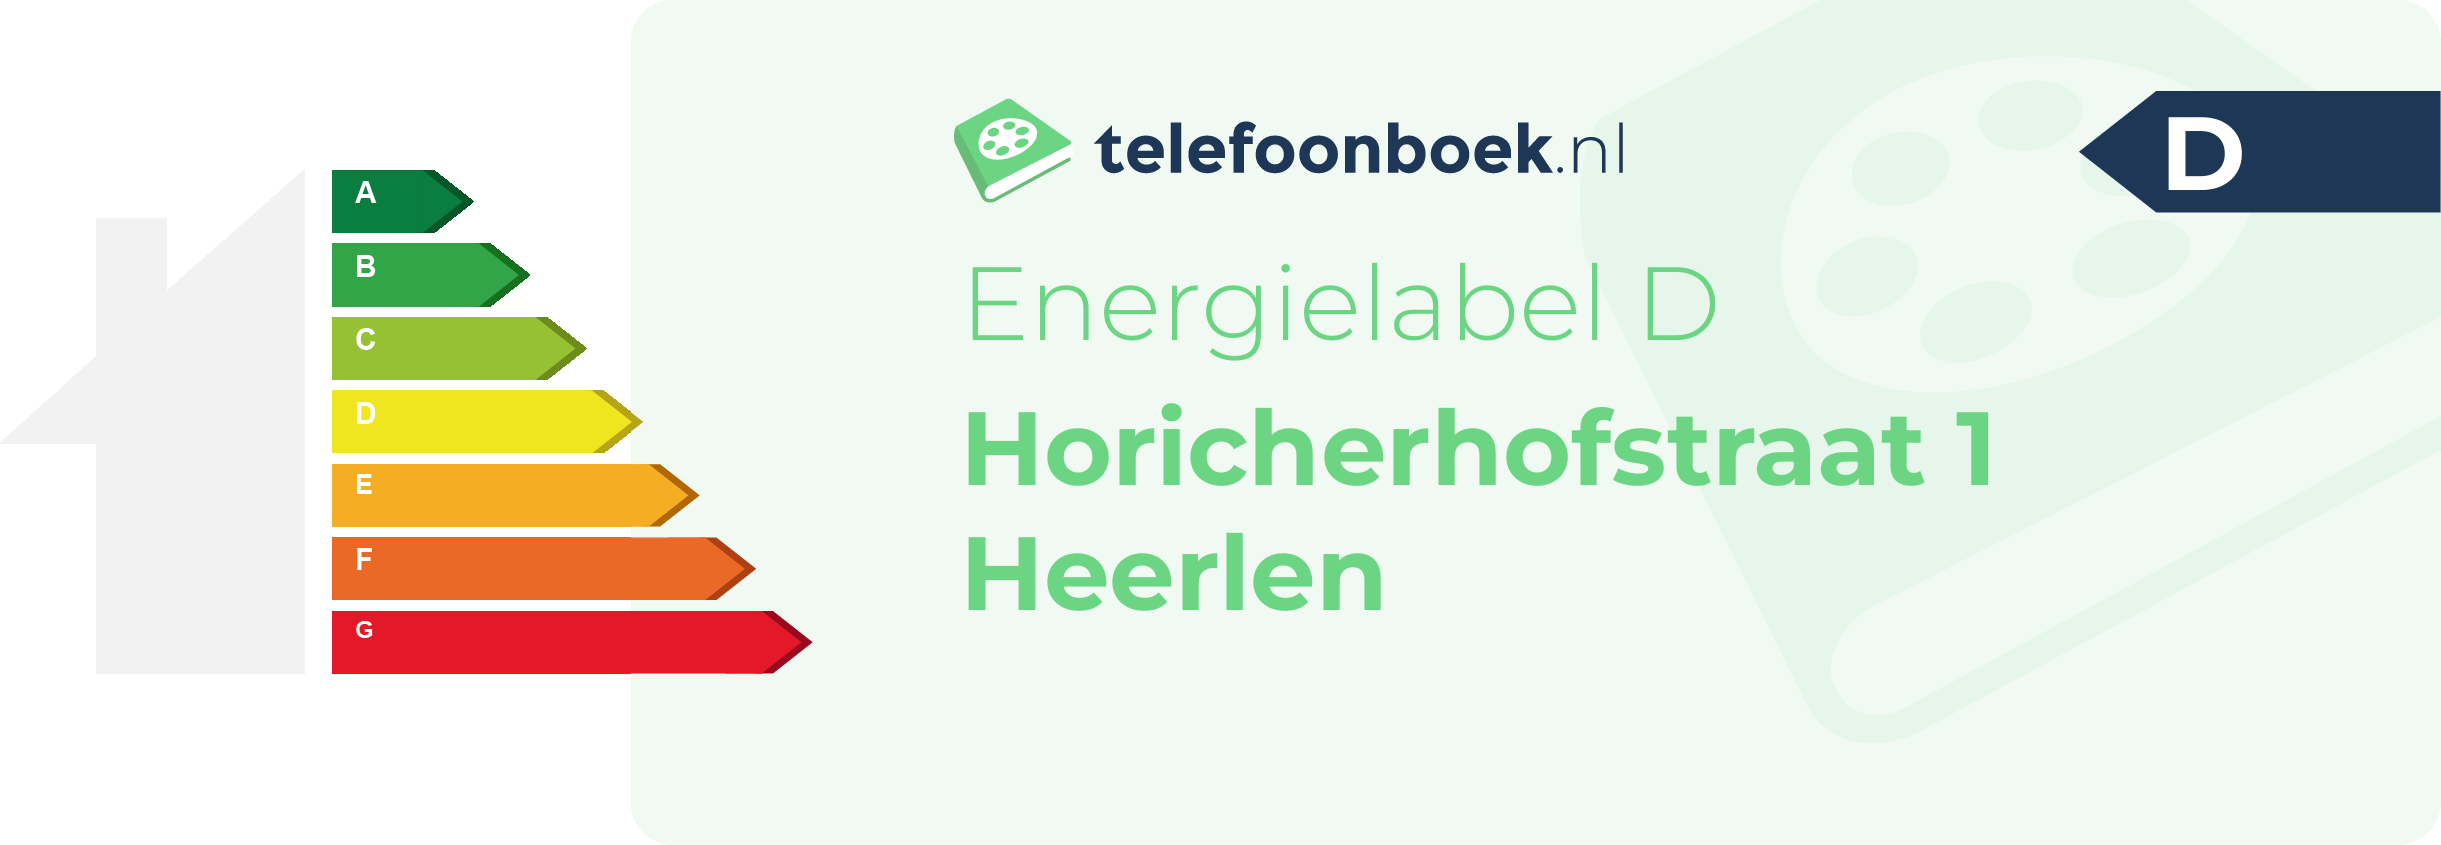 Energielabel Horicherhofstraat 1 Heerlen